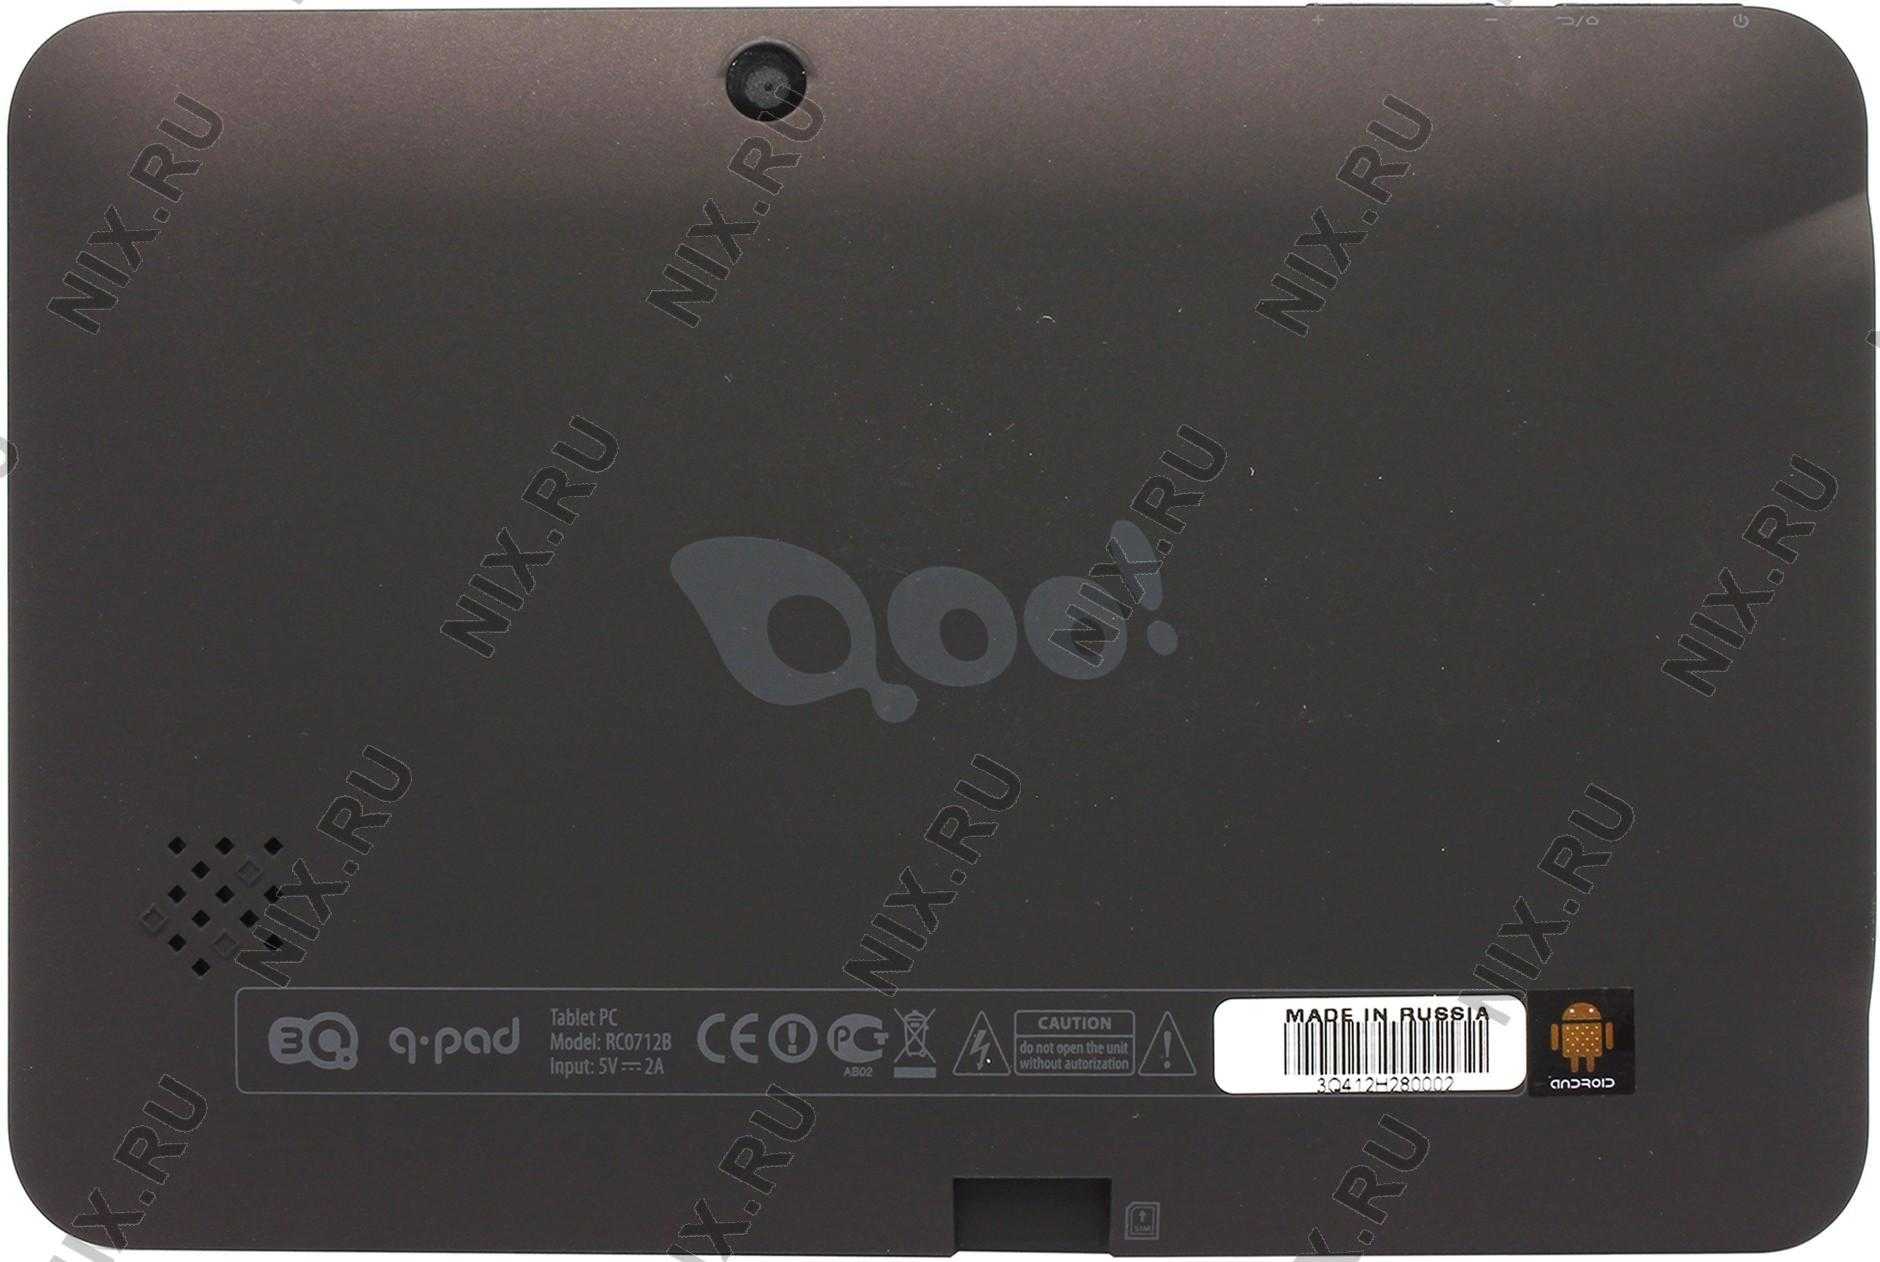 3q qoo q-pad rc0718c 1gb ddr3 8gb emmc (серый) - купить , скидки, цена, отзывы, обзор, характеристики - планшеты